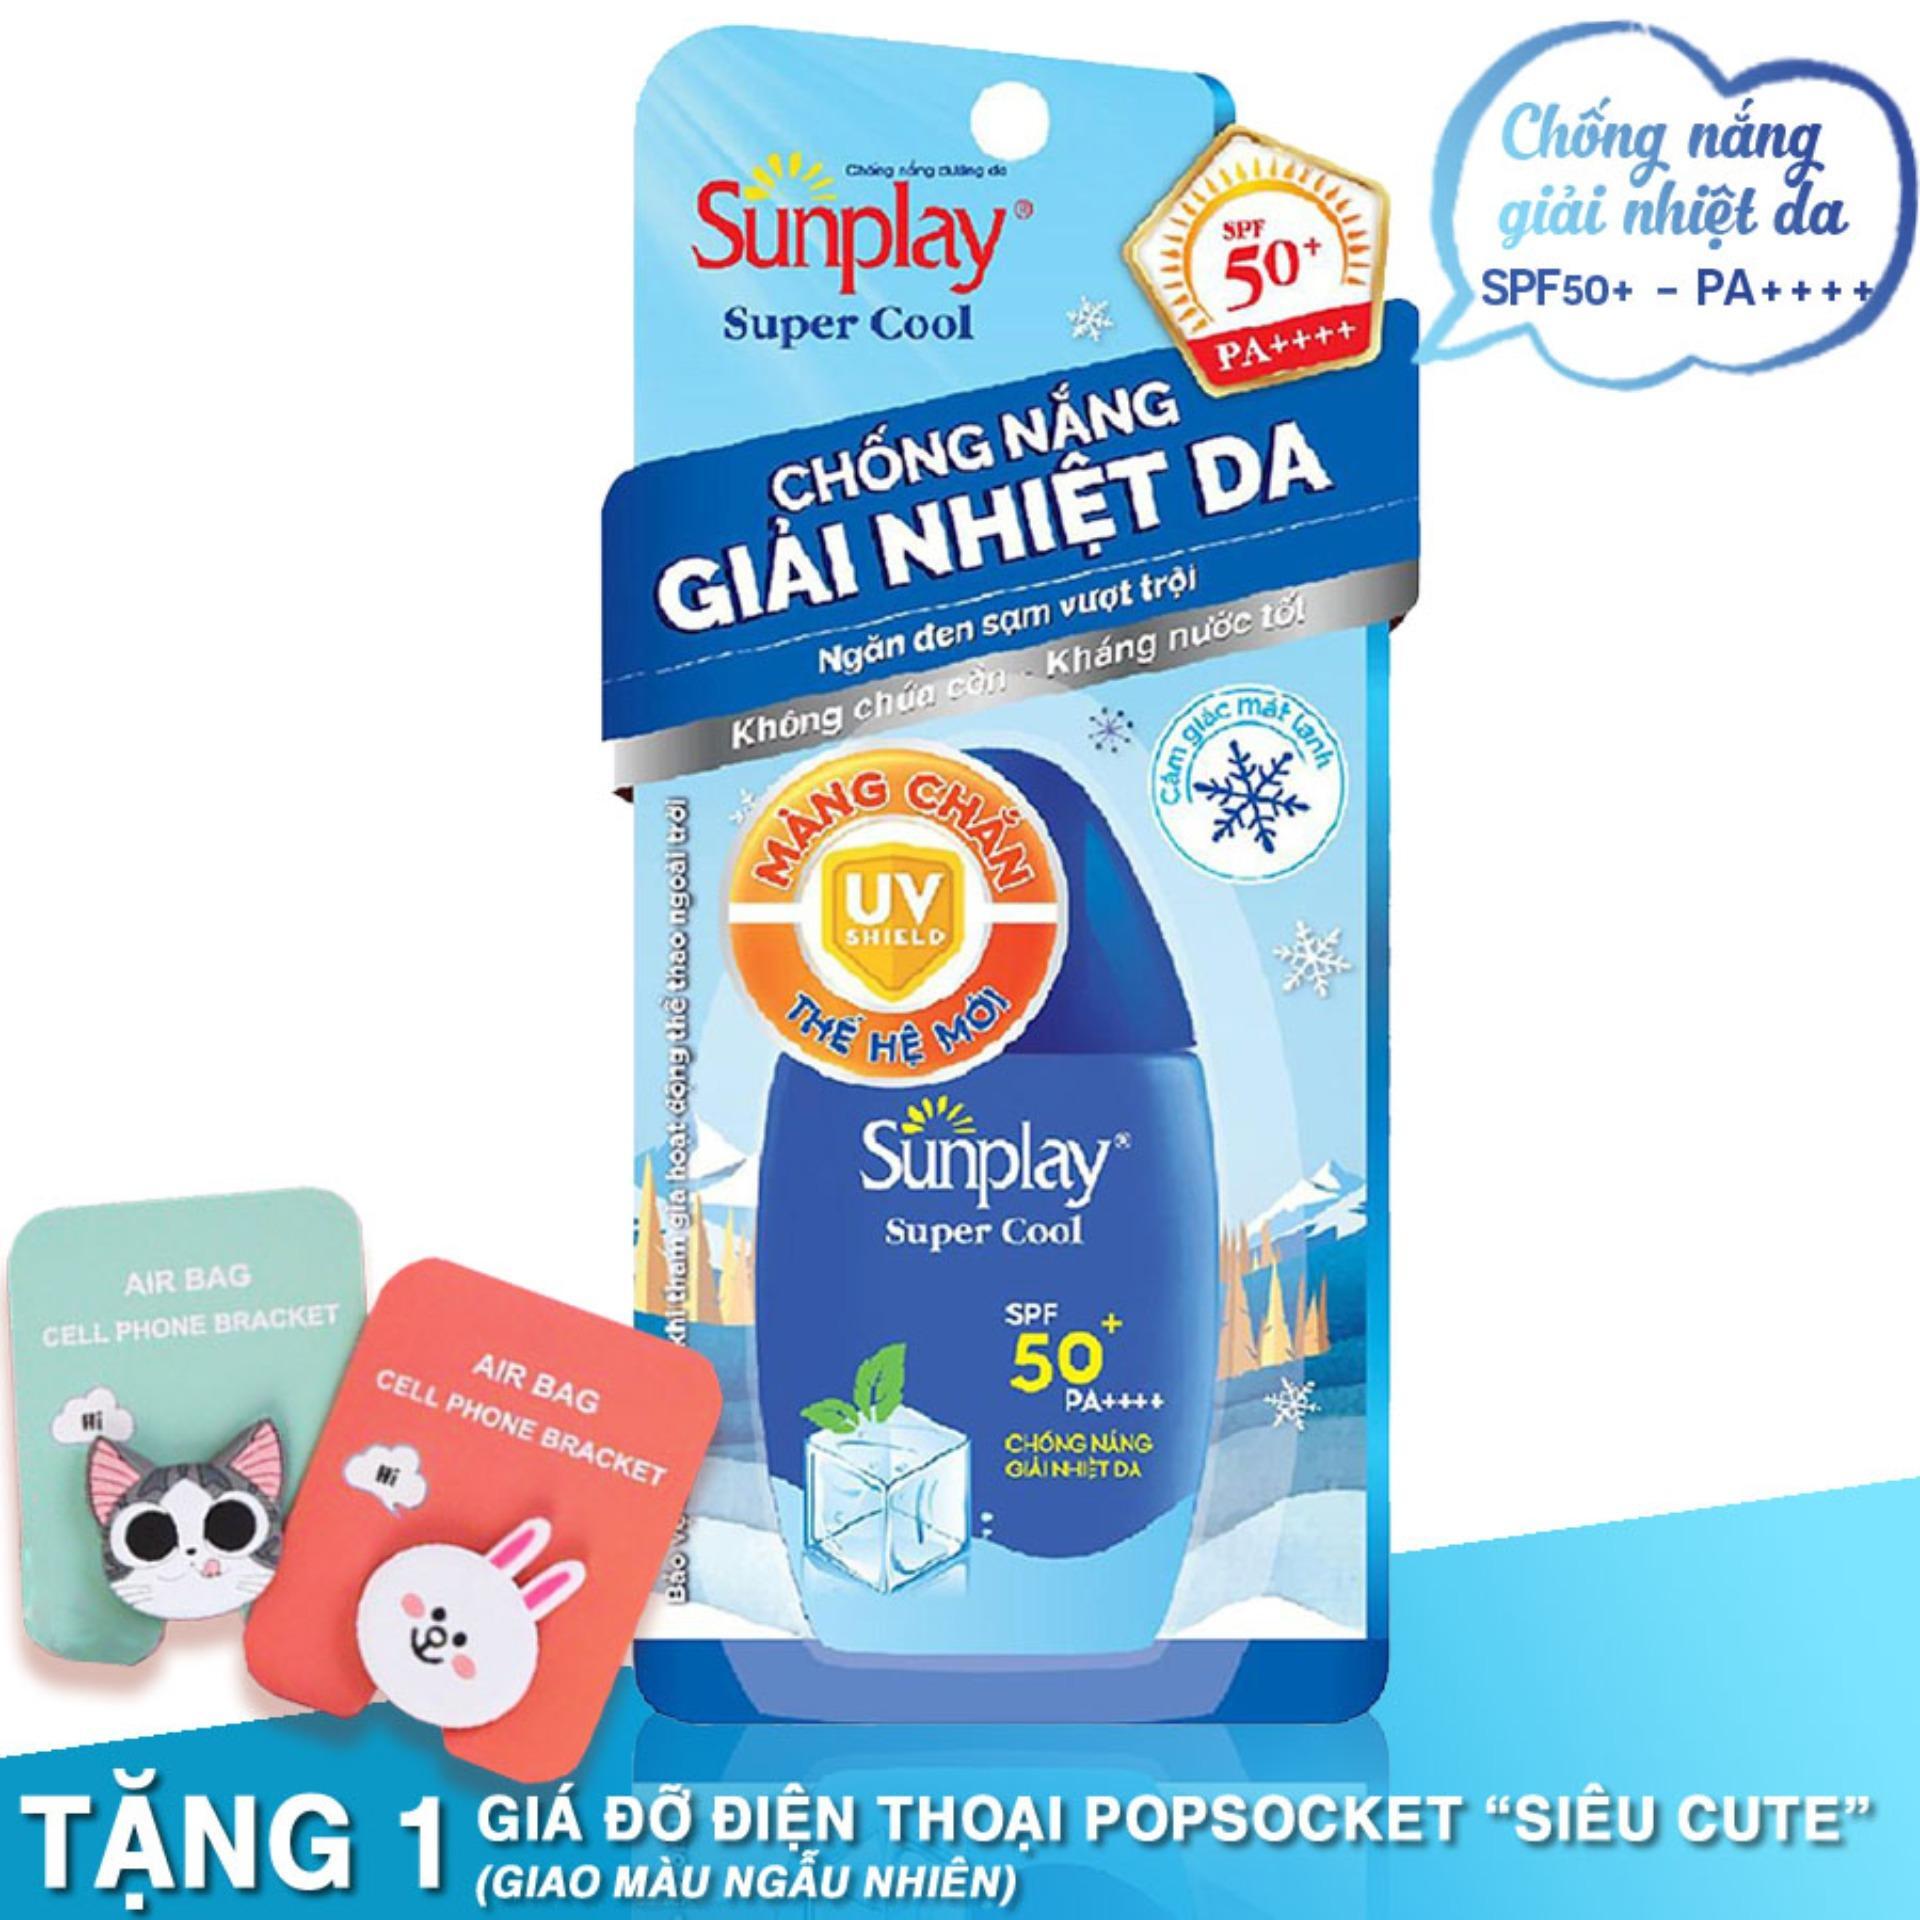 Sữa chống nắng giải nhiệt da Sunplay Super Cool 30g